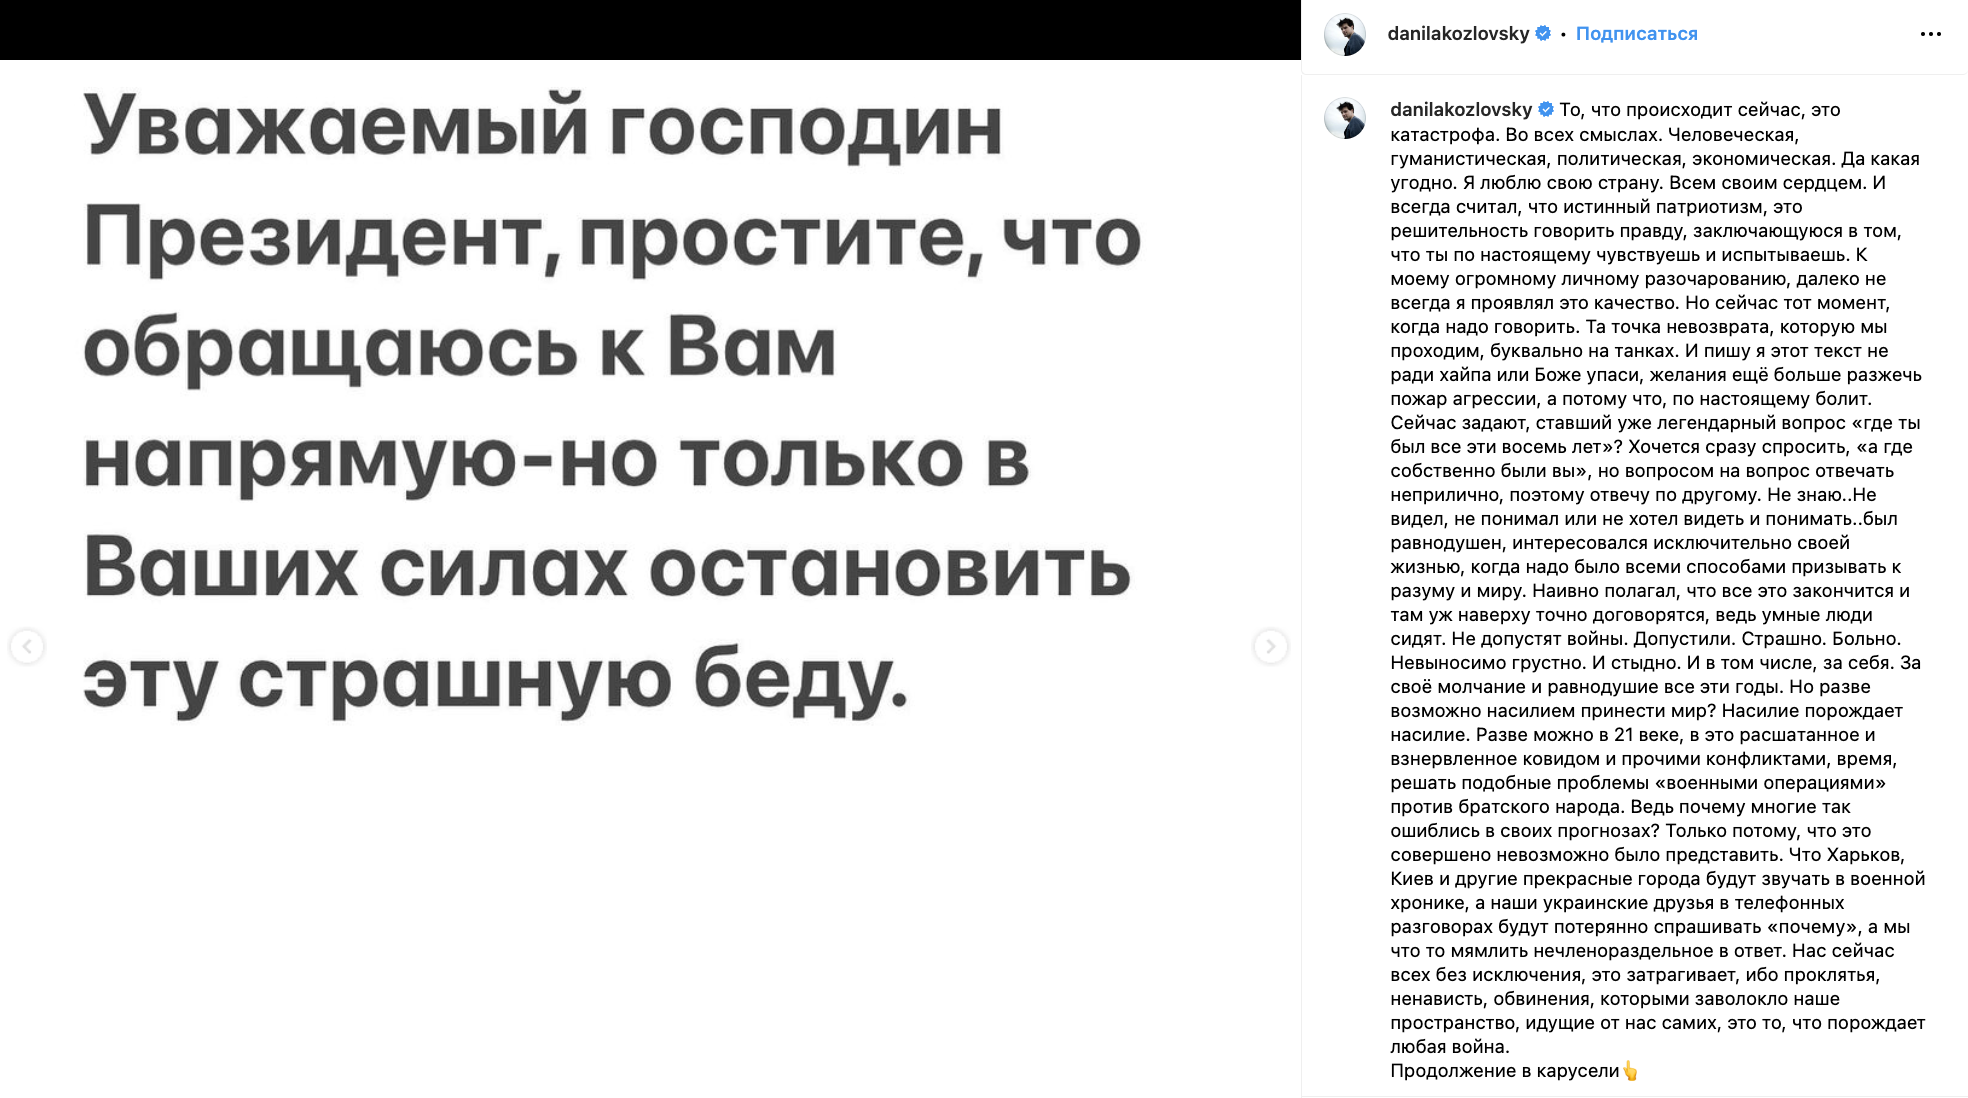 Але радіти не треба: як російський актор Козловський, який засудив війну, закрив рот путіністам та відсудив 1 рубль за свою честь